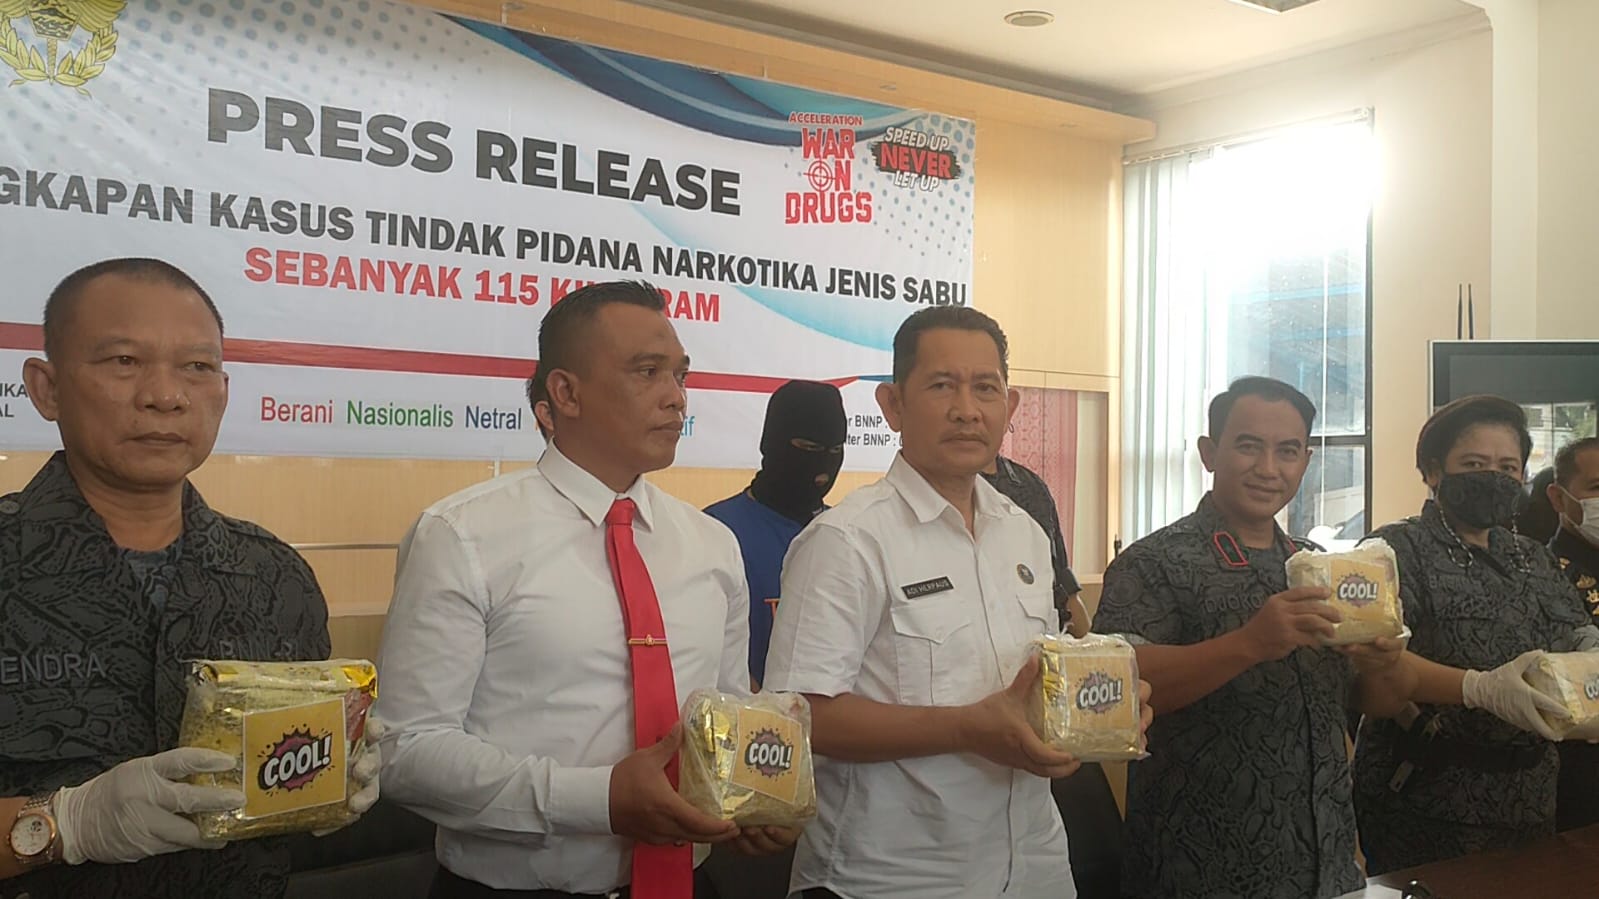 Kasus 115 Kilogram Sabu yang Masuk ke Palembang, Kepala BNNP Sumatera Selatan:  Bukan Residivis Kasus Narkoba 